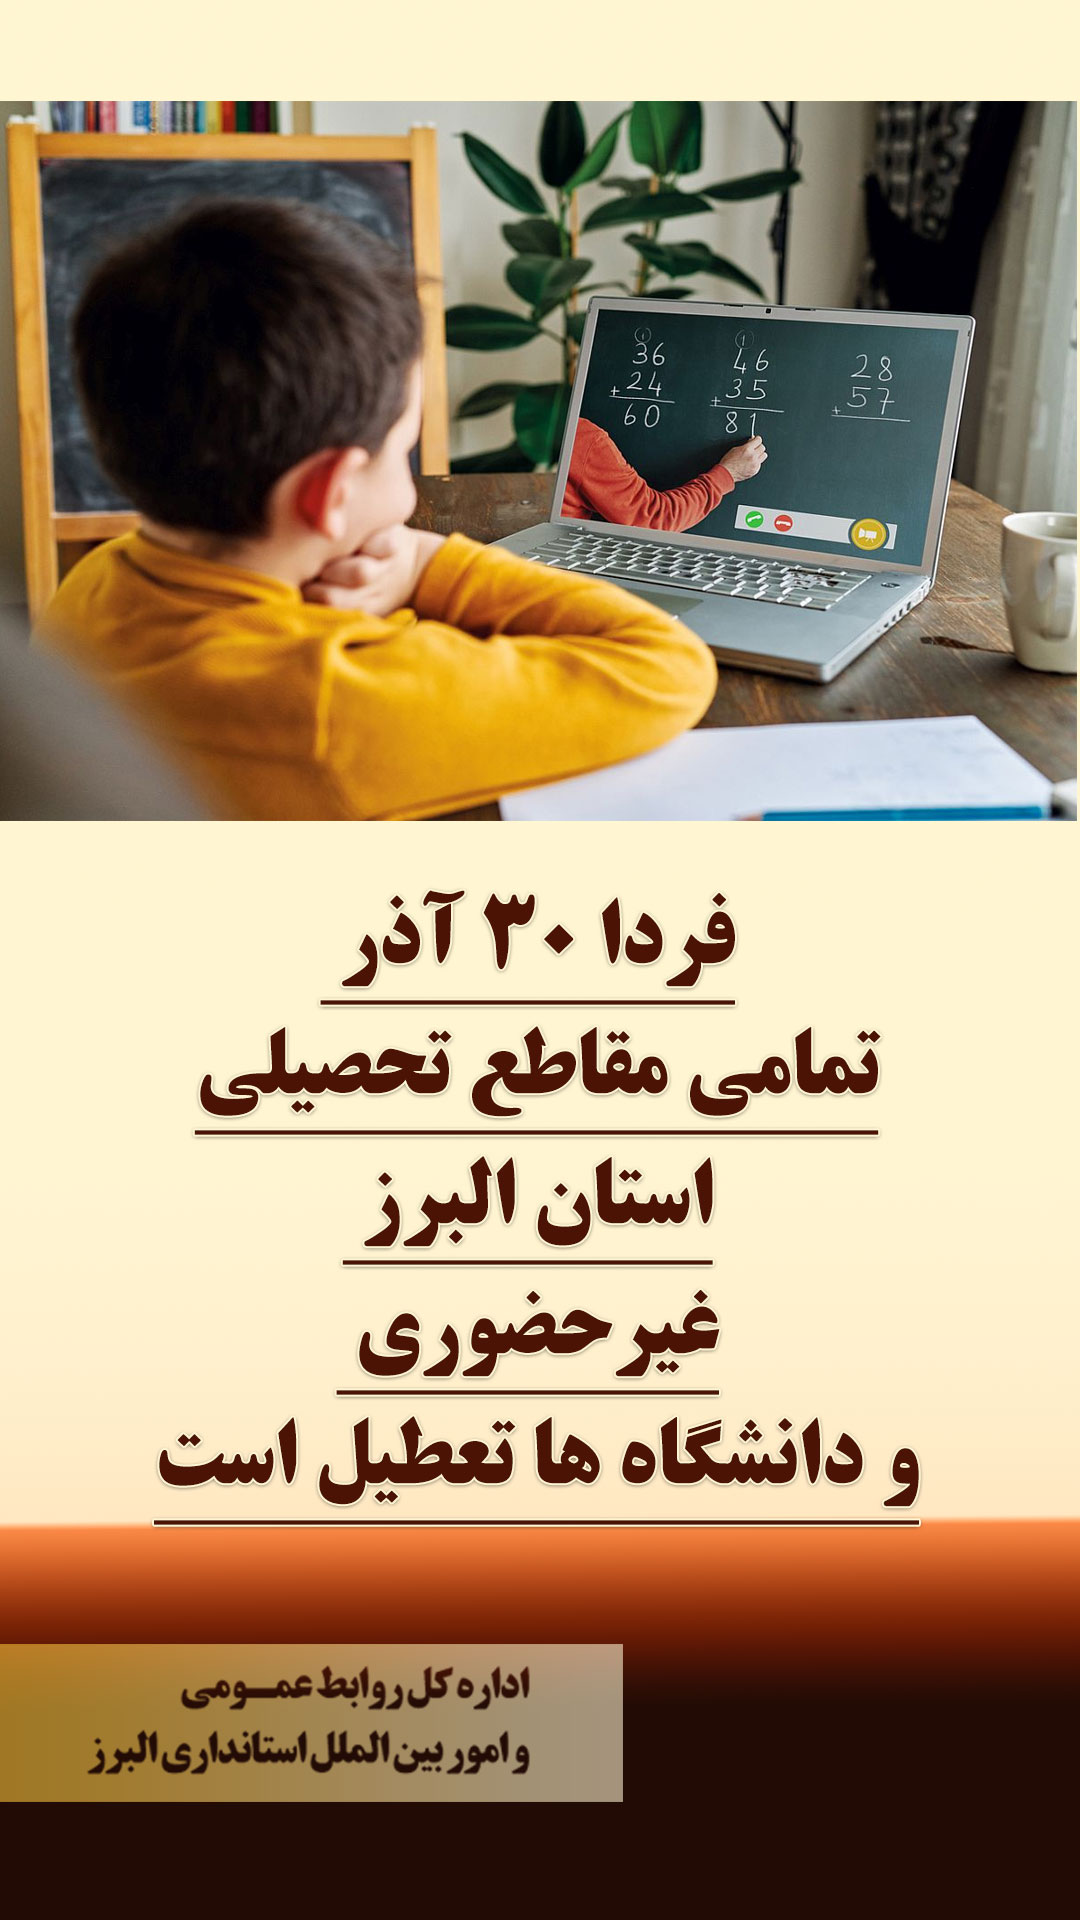 فردا ۳۰ آذر تمامی مقاطع تحصیلی استان البرز غیرحضوری و دانشگاه ها تعطیل است